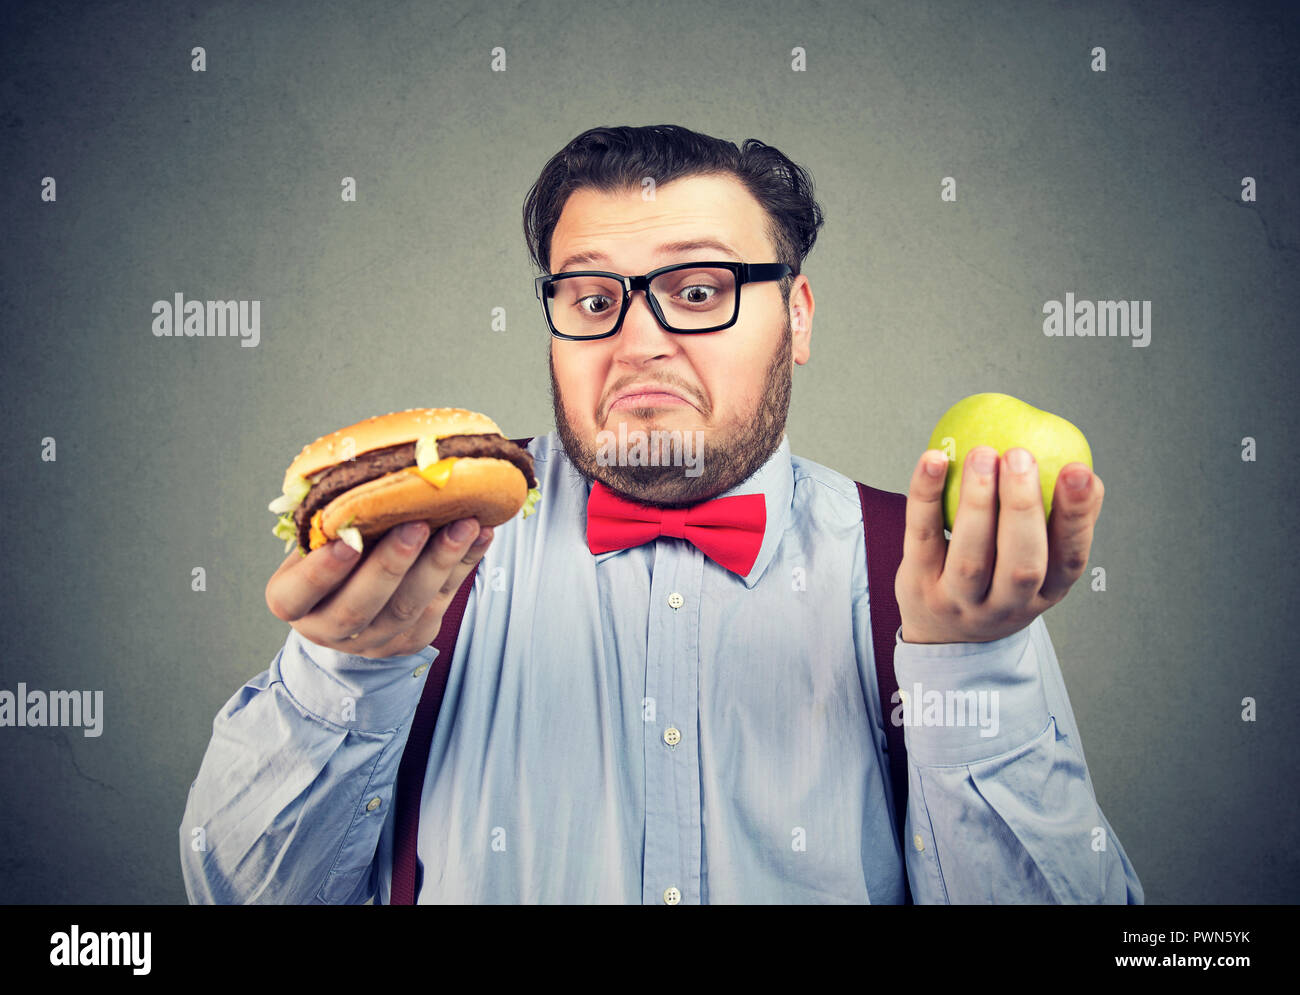 Jeune homme grassouillet en nœud papillon et verres holding apple et burger à la confondre avec choix Banque D'Images